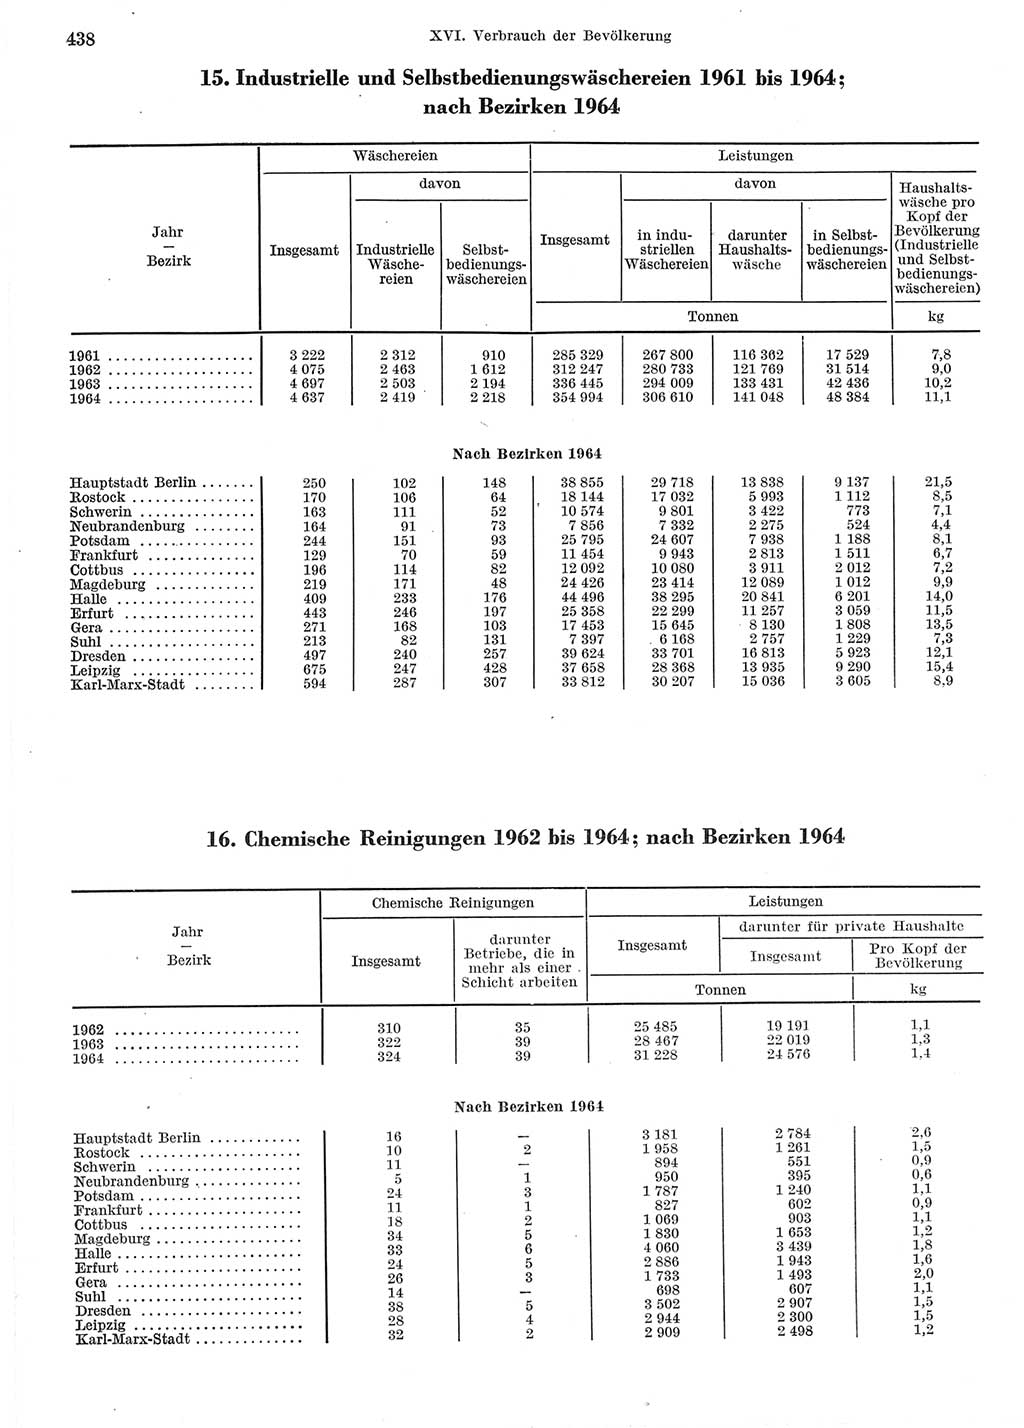 Statistisches Jahrbuch der Deutschen Demokratischen Republik (DDR) 1965, Seite 438 (Stat. Jb. DDR 1965, S. 438)